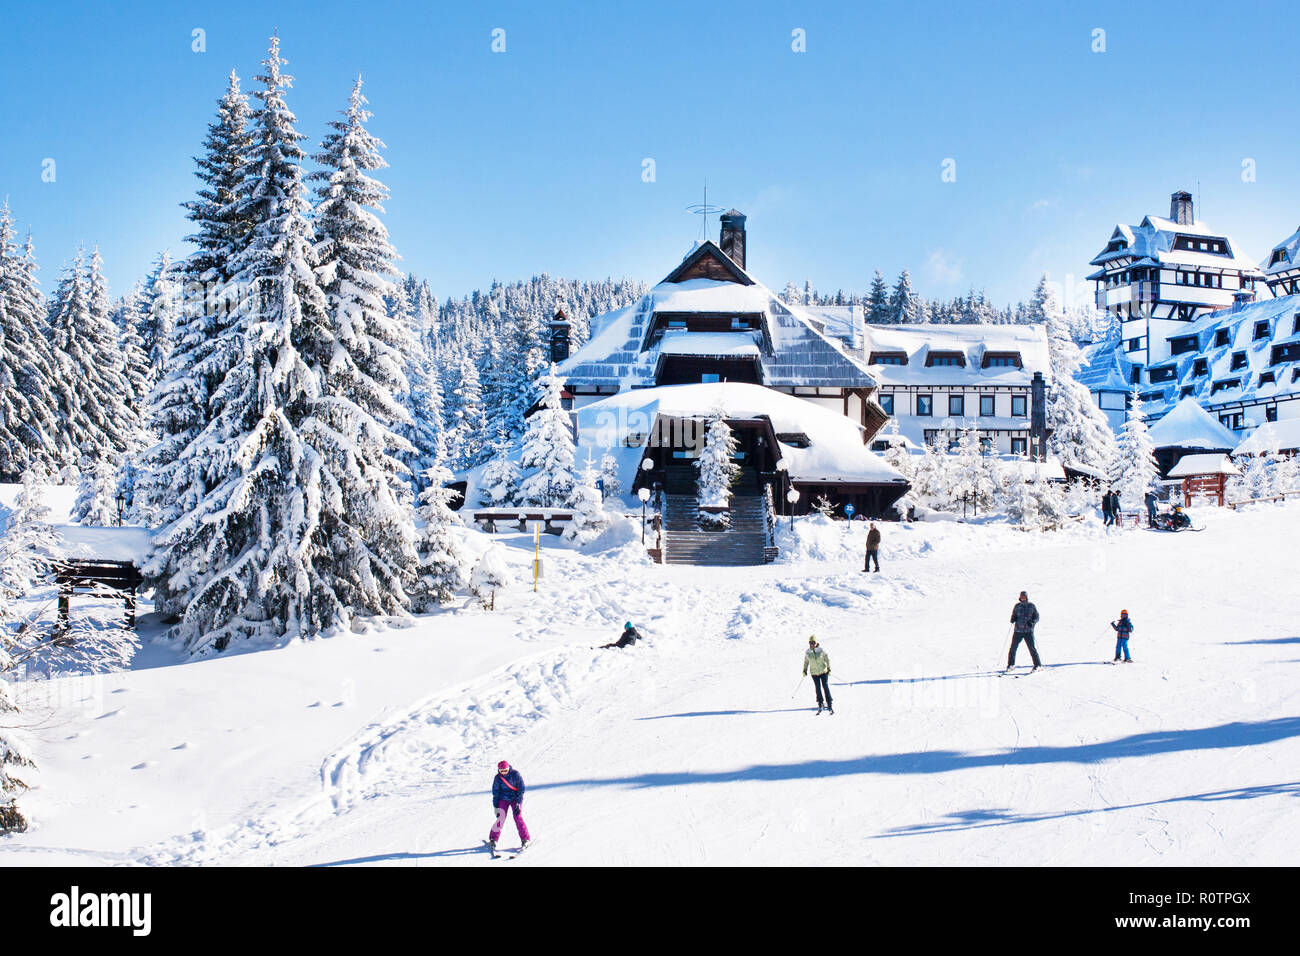 Panorama der Skistation Kopaonik, Serbien, Skipiste, chalet Häuser bedeckt mit Schnee, Skifahren, Berge im Winter Stockfoto